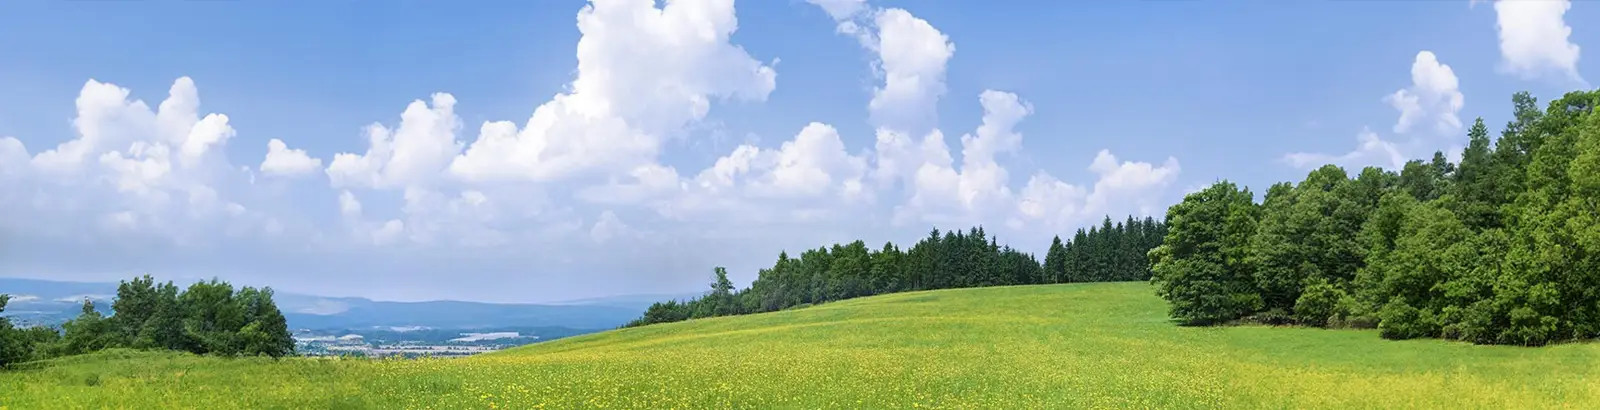 Landschaft mit einer satt grünen Wiese, Bäumen und einem bewölkten, blauen Himmel. Im Hintergrund sind die Berge eines Gebirges zu sehen.